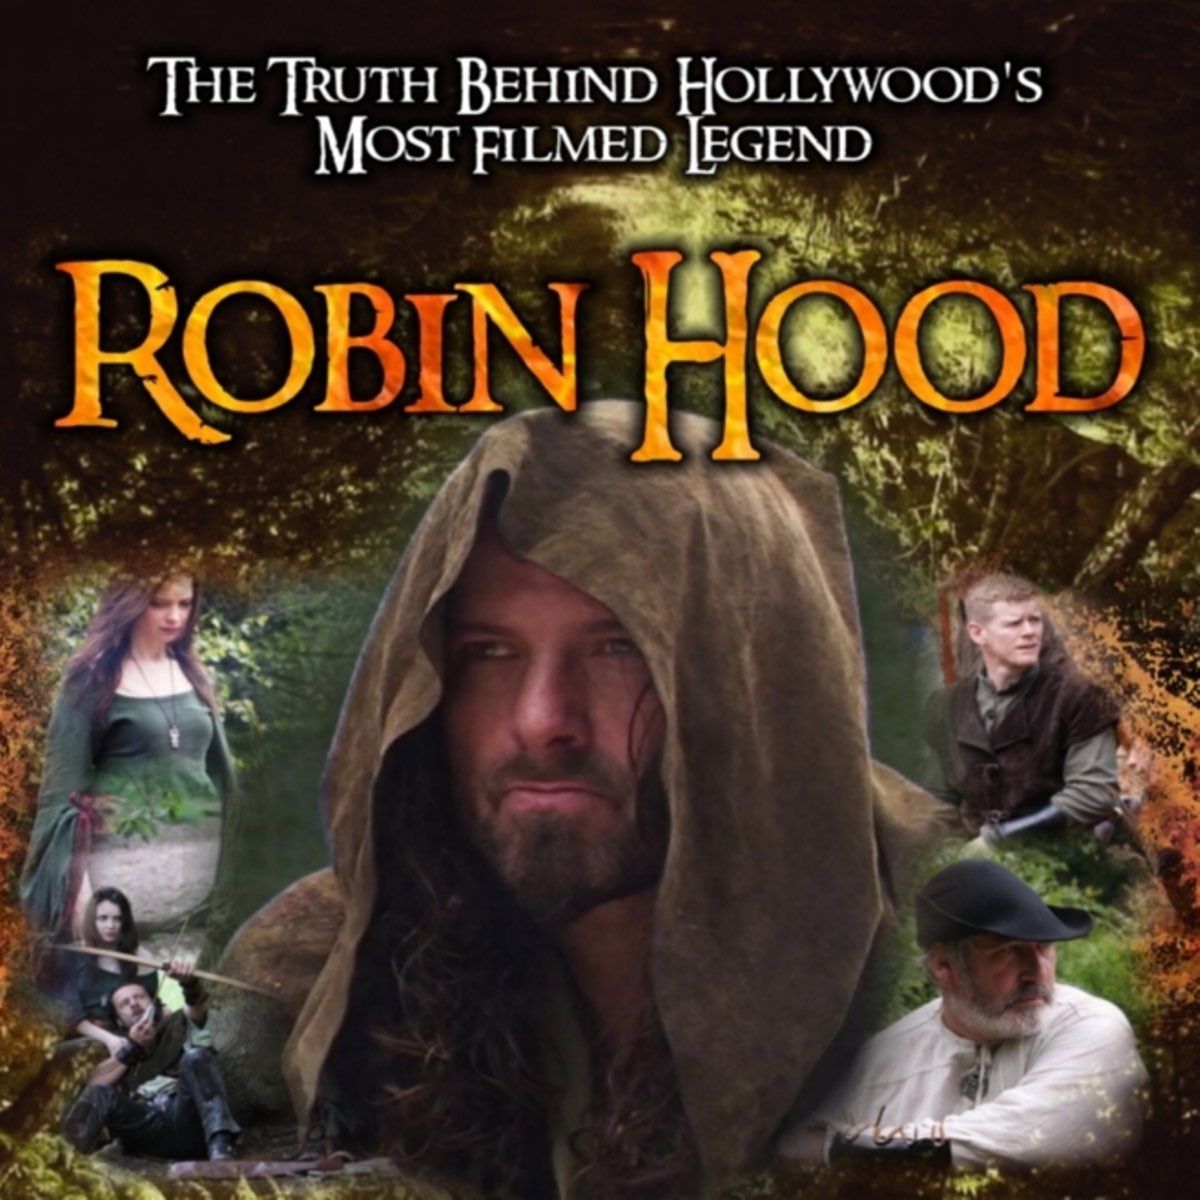 Robin Hood Soundtrack – Album von Verschiedene Interpret:innen – Apple Music